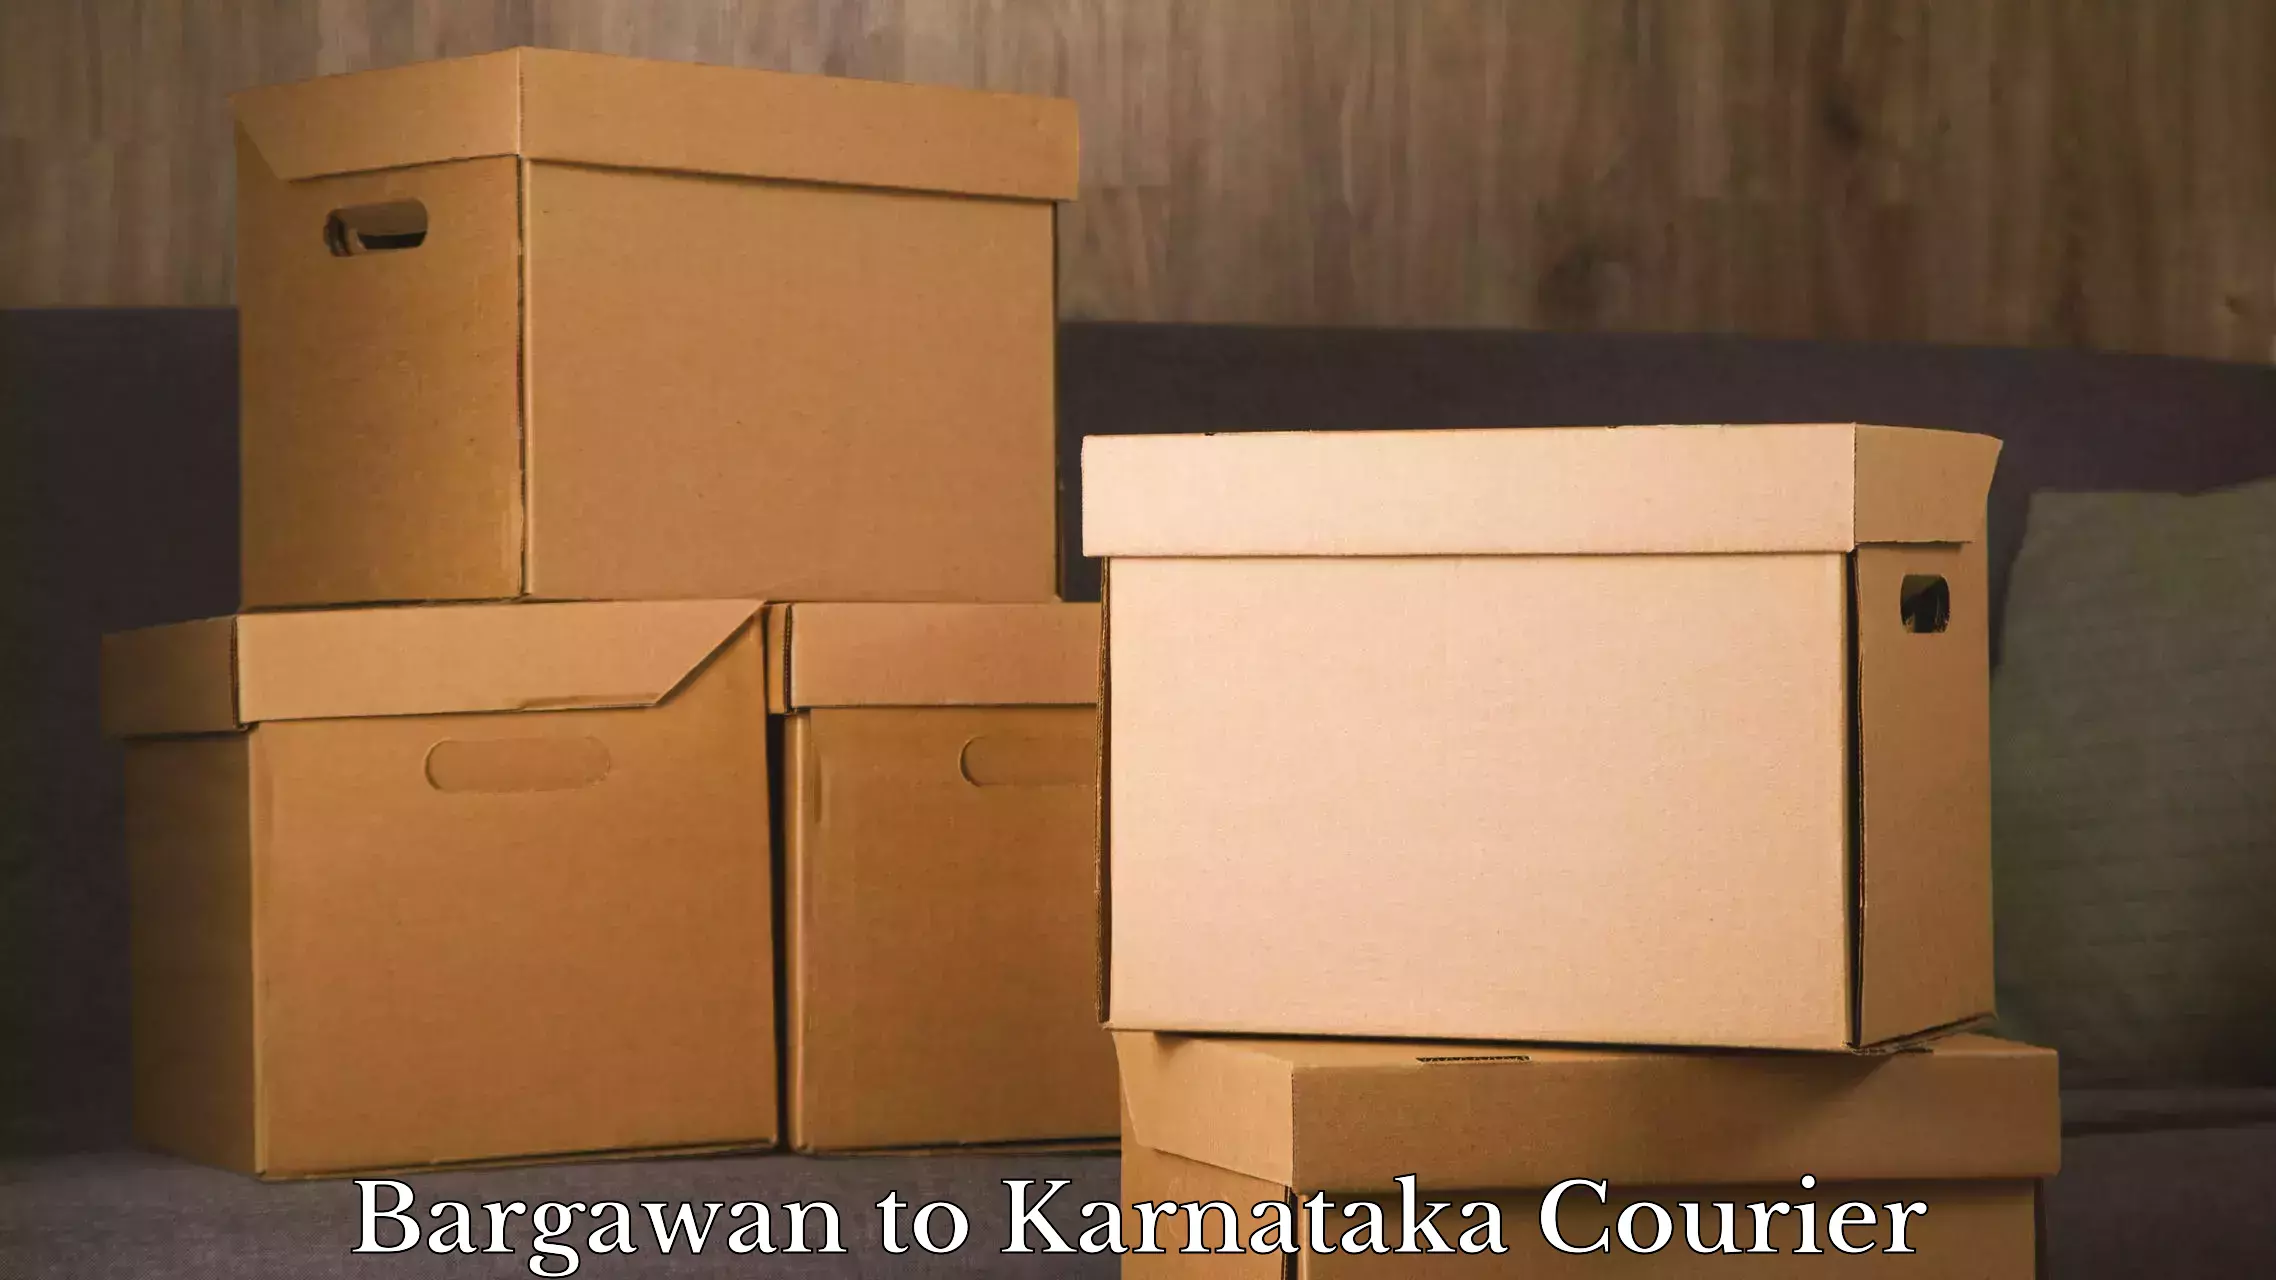 Baggage transport management Bargawan to Chikkamagalur